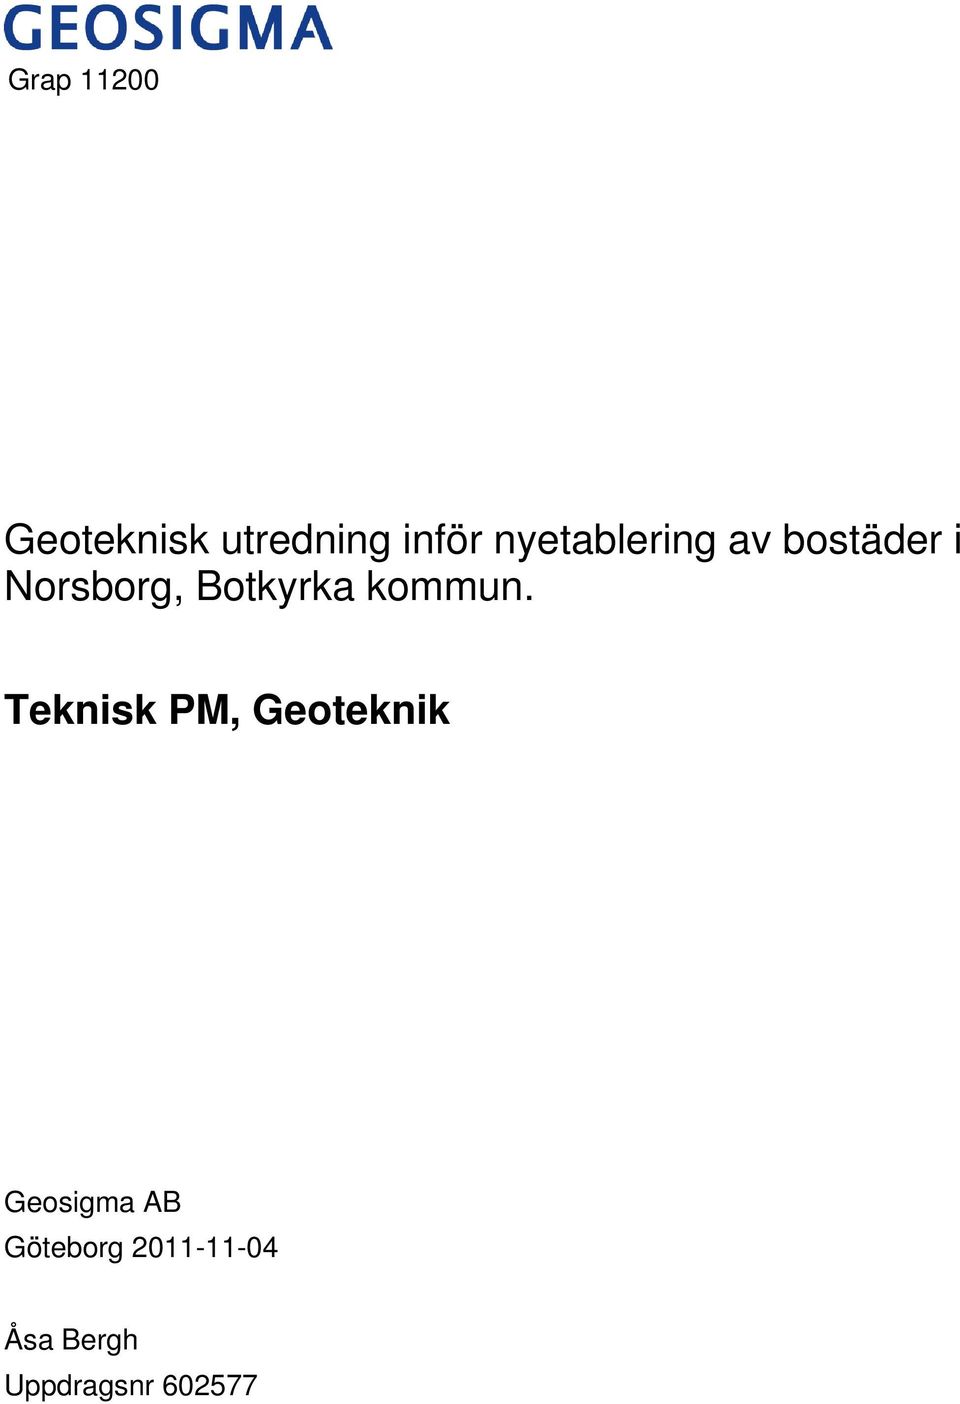 Norsborg, Teknisk PM, Geoteknik